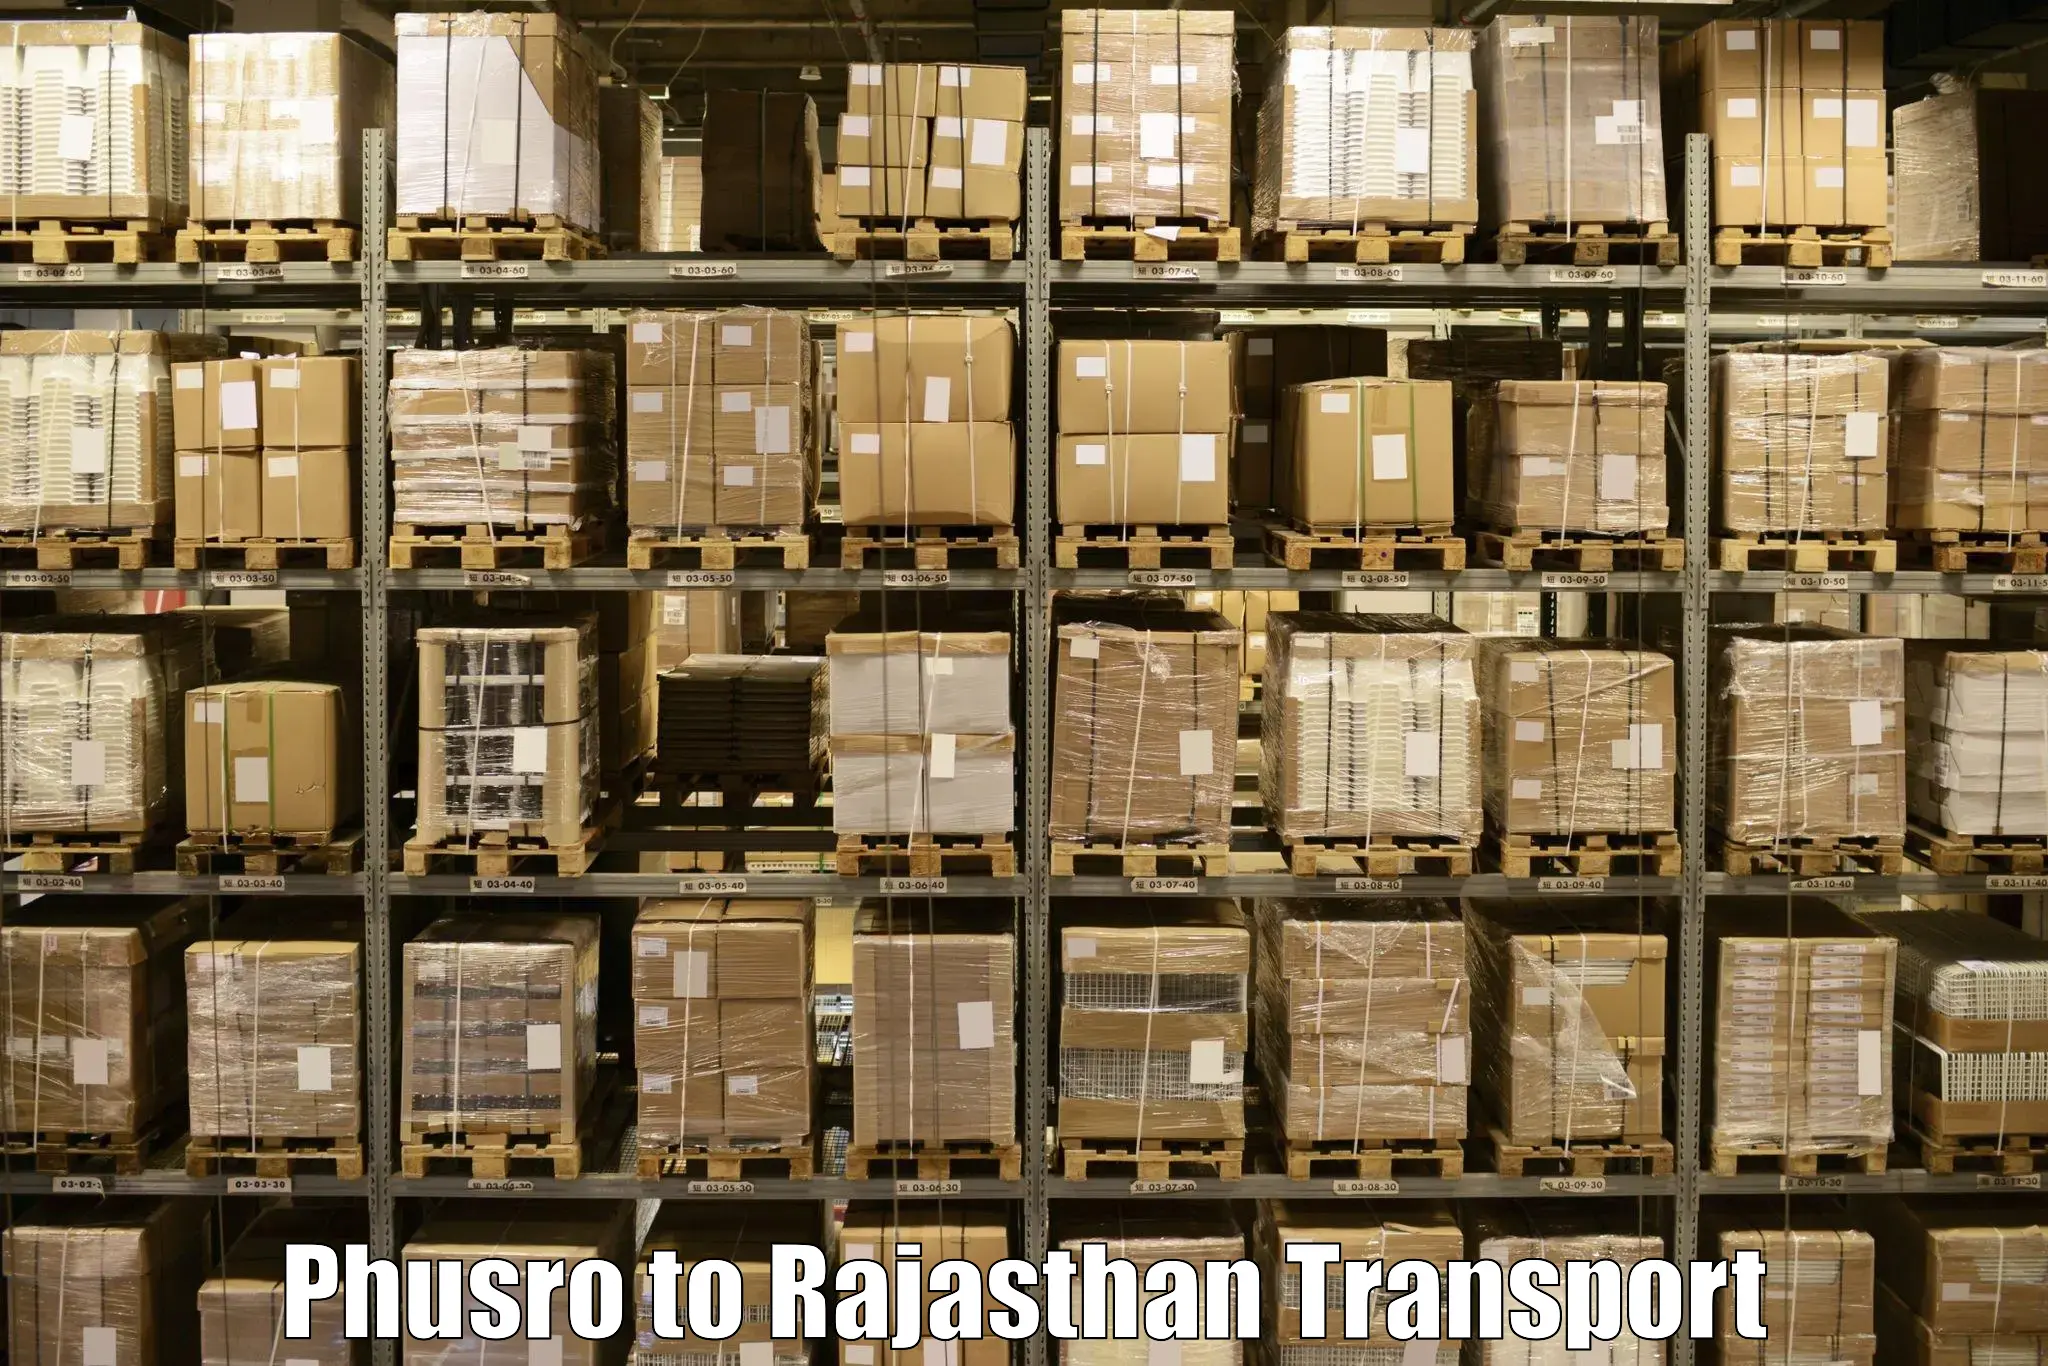 Furniture transport service Phusro to Rajasthan